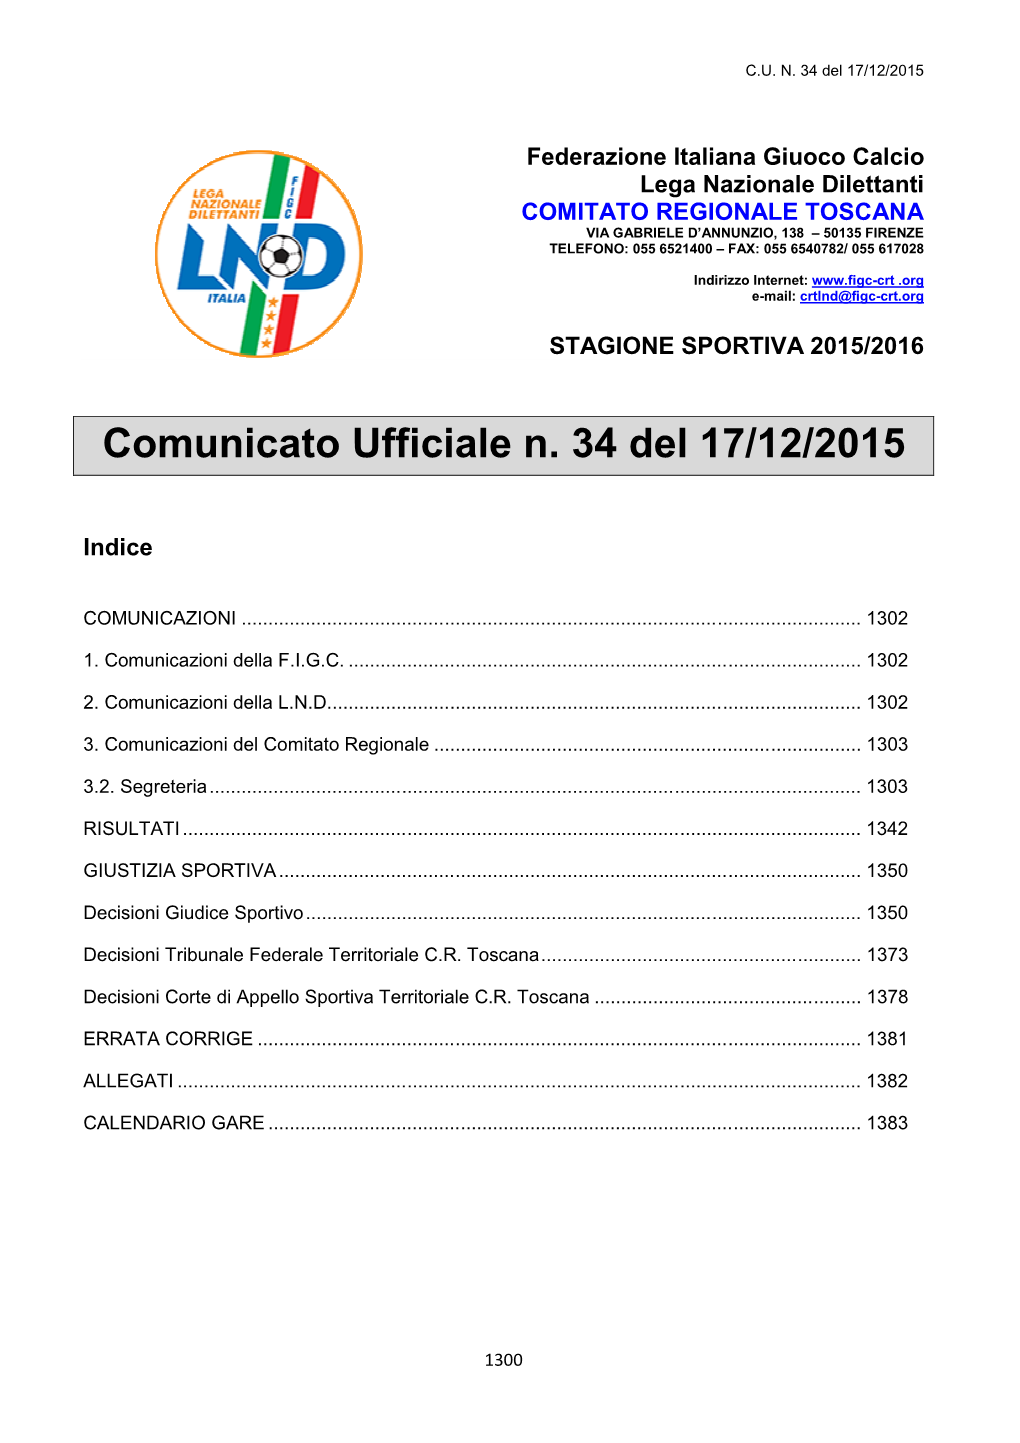 Comunicato Ufficiale N. 34 Del 17/12/2015